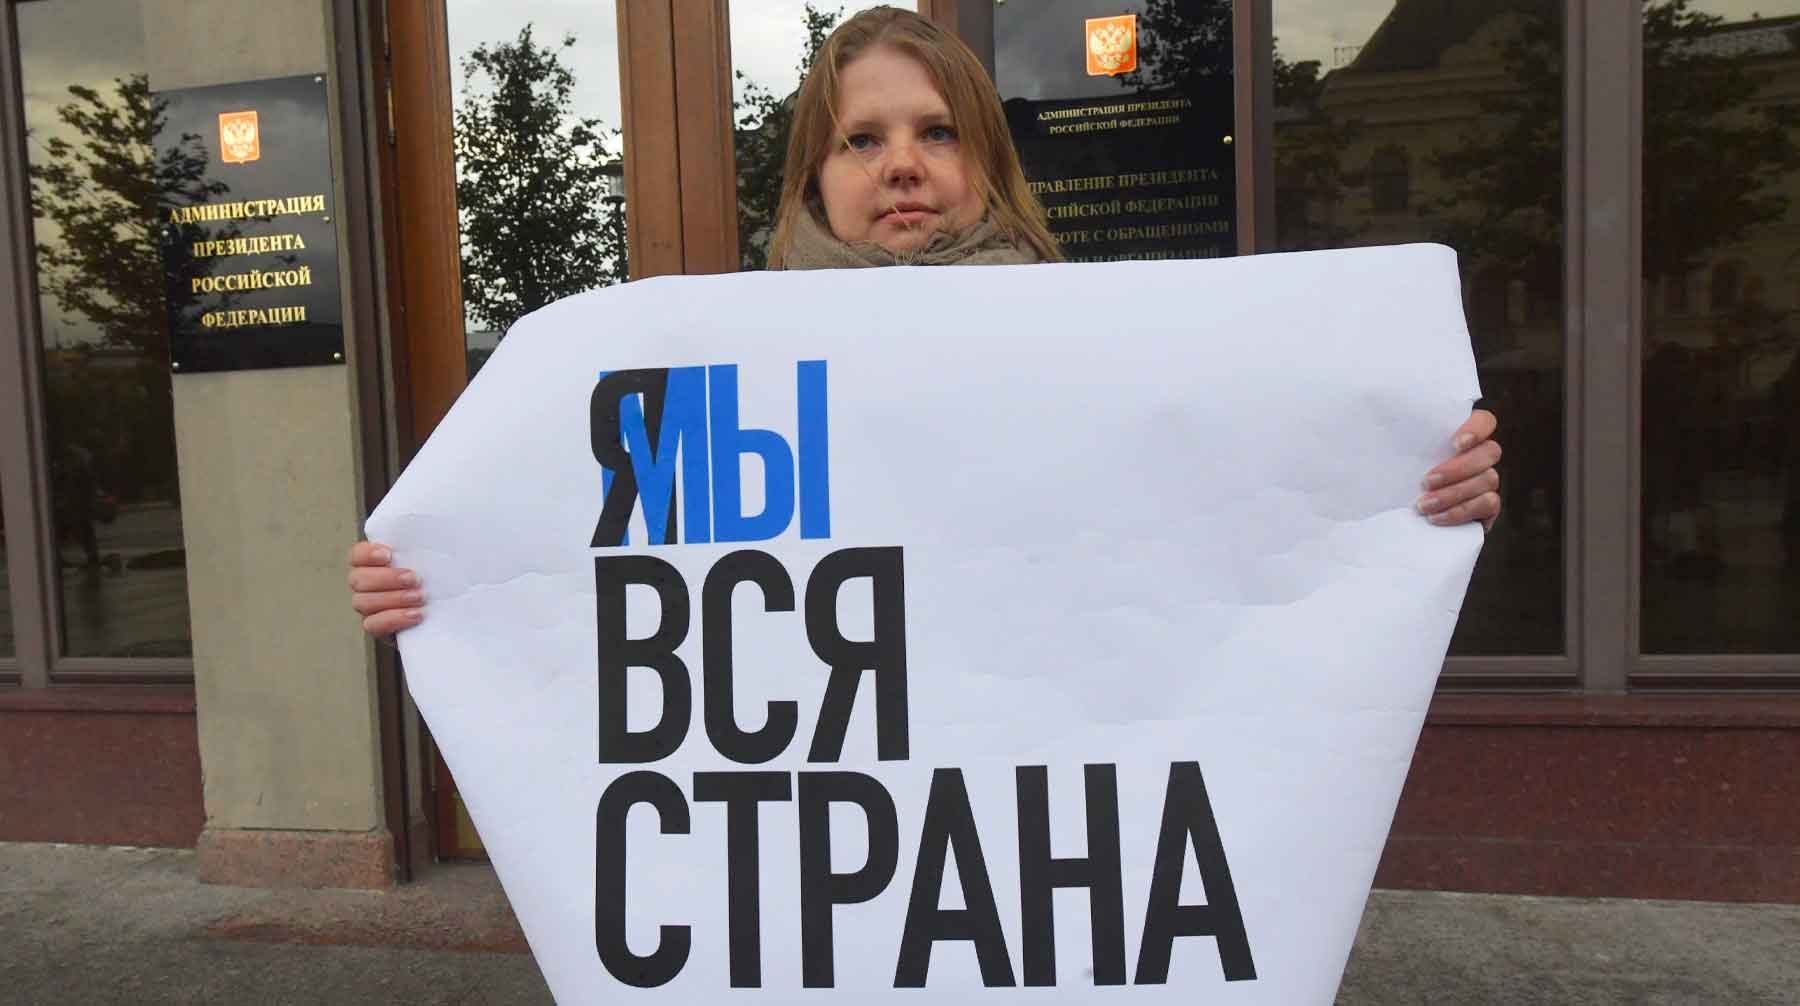 Это самое высокое число акций за последние несколько лет, сообщают в Центре социально-трудовых прав Фото: © GLOBAL LOOK press / Komsomolskaya Pravda